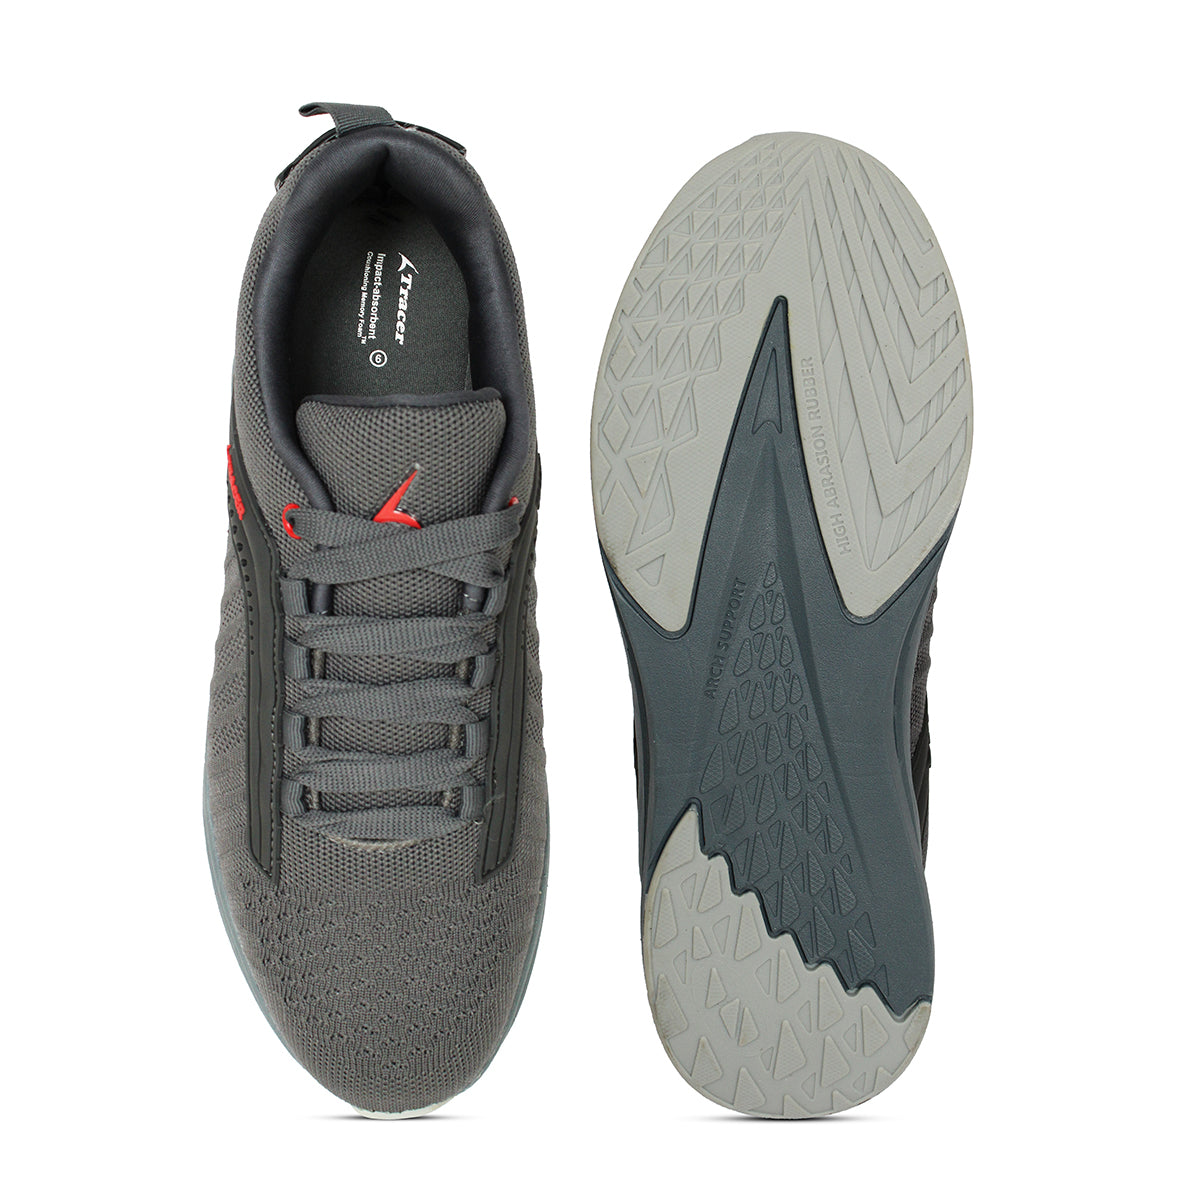 Men's Running Shoes Grey